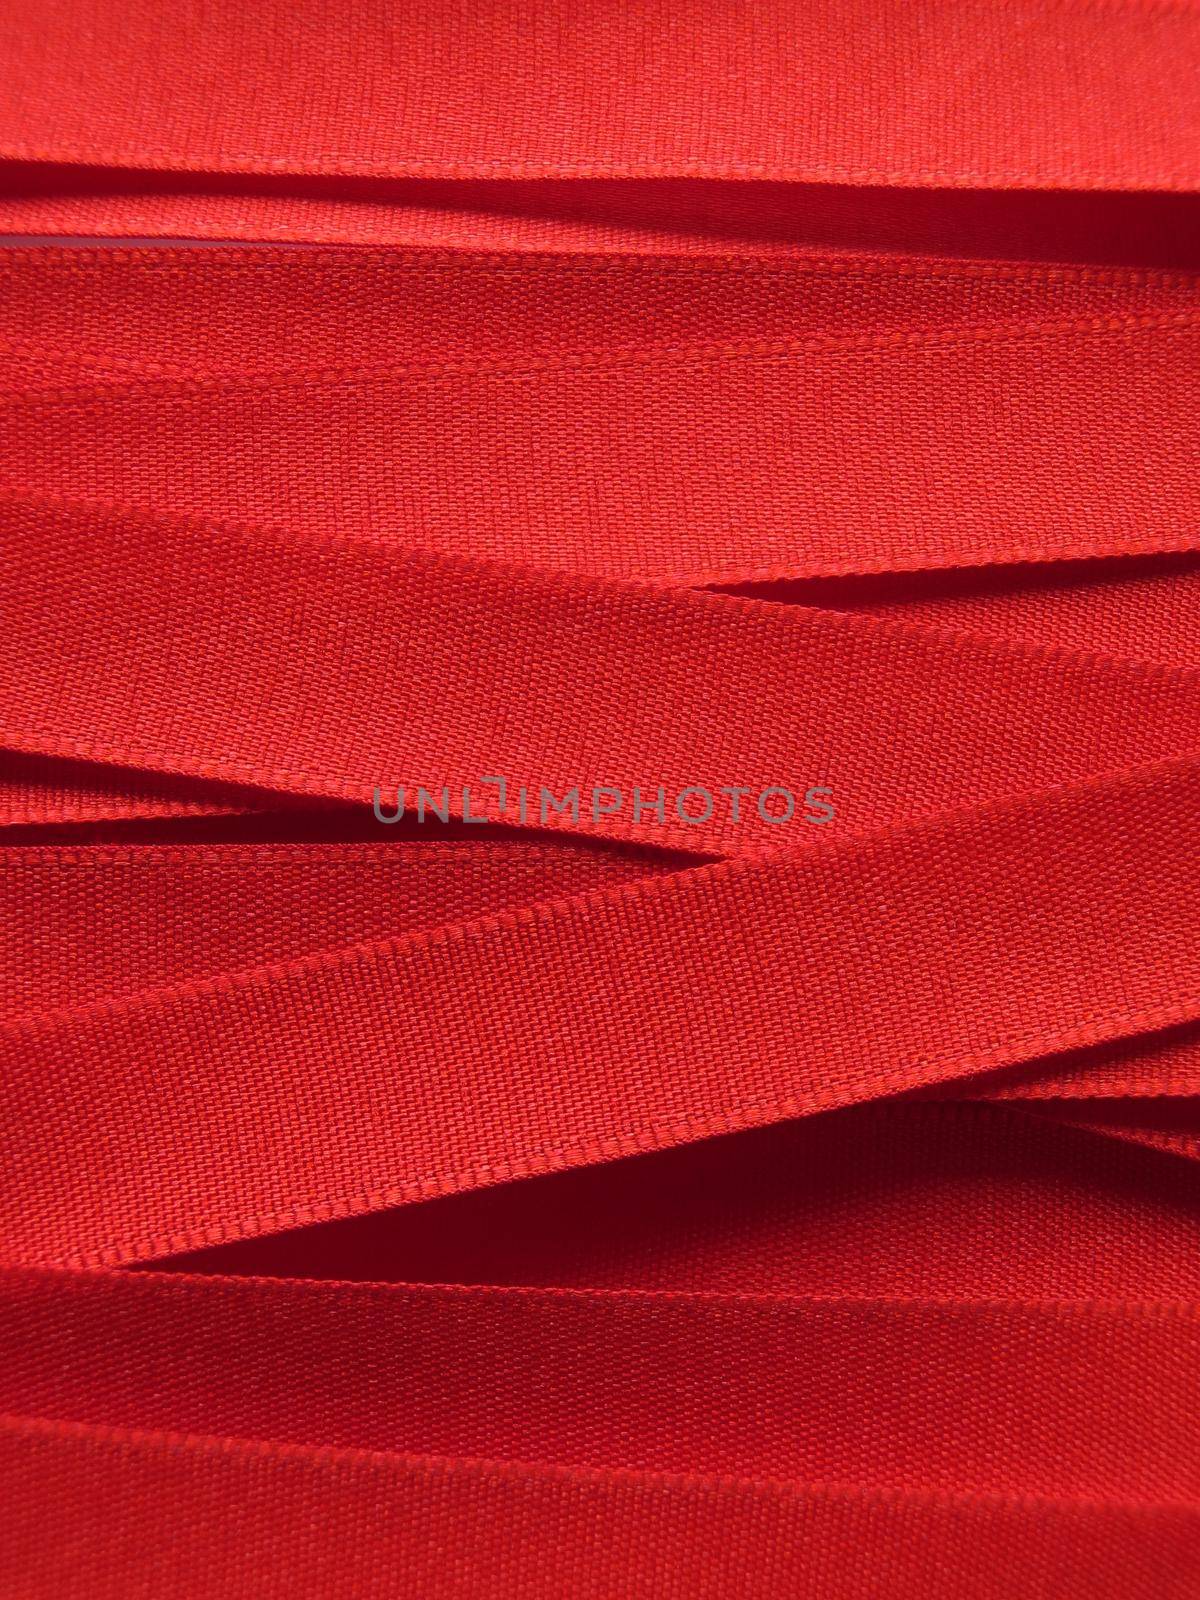 Shiny red satin ribbon by aroas